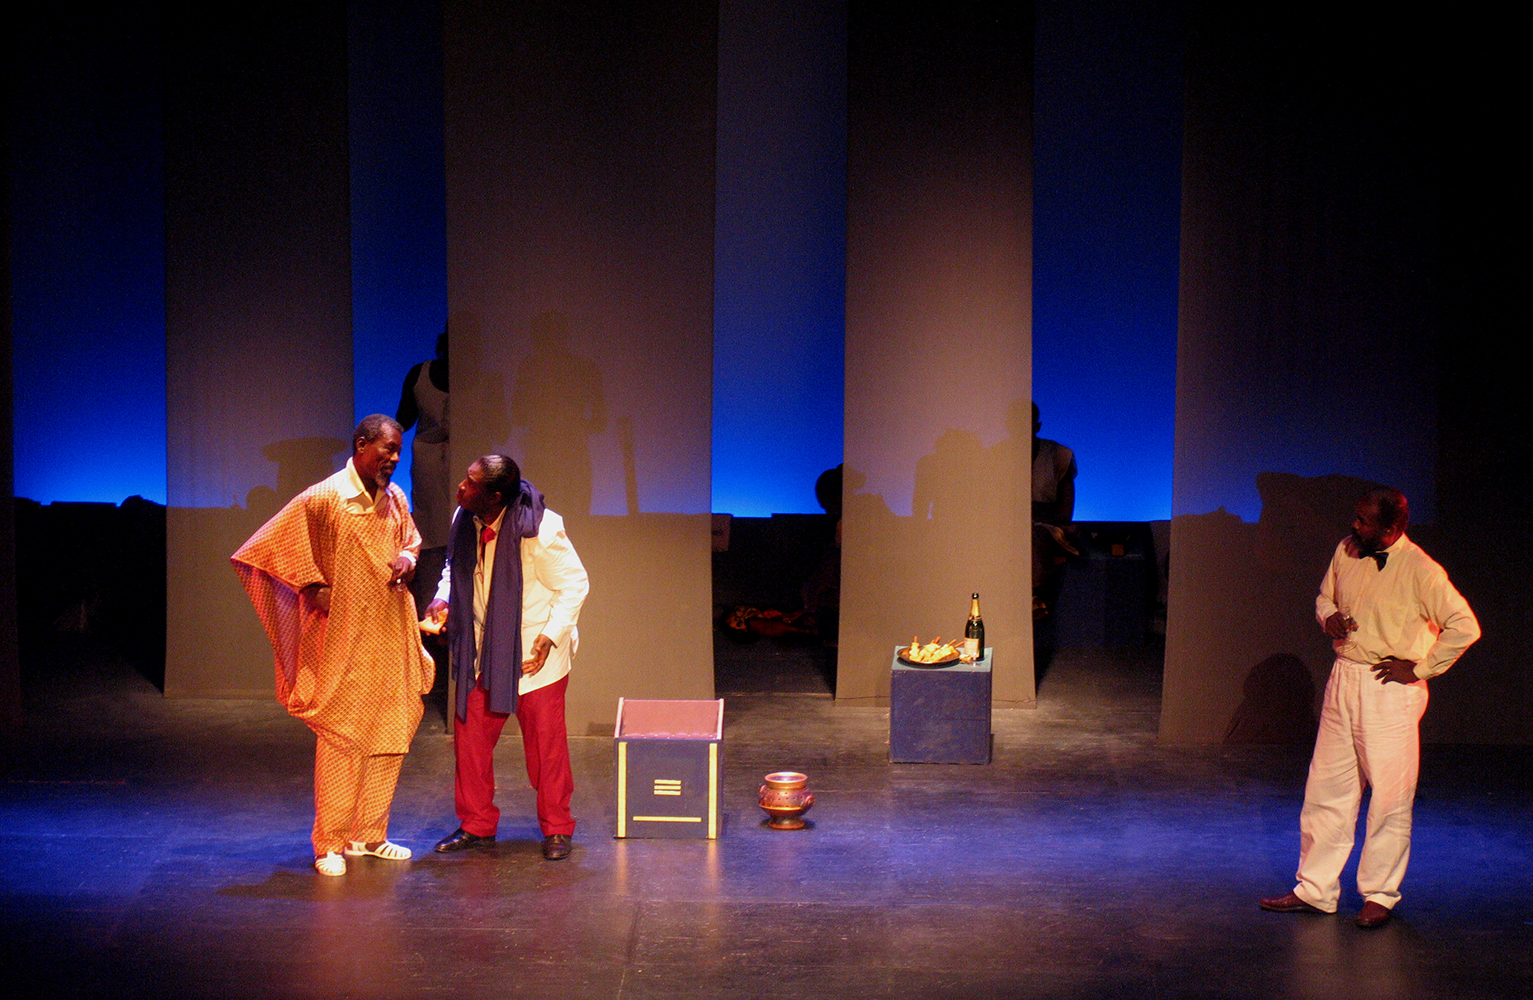 10 juillet 2005 "Ndo Kela" de Koulsy Lamko au théâtre du Vieux Colombier, Paris. Mise en scène de Rodrigue Norman.